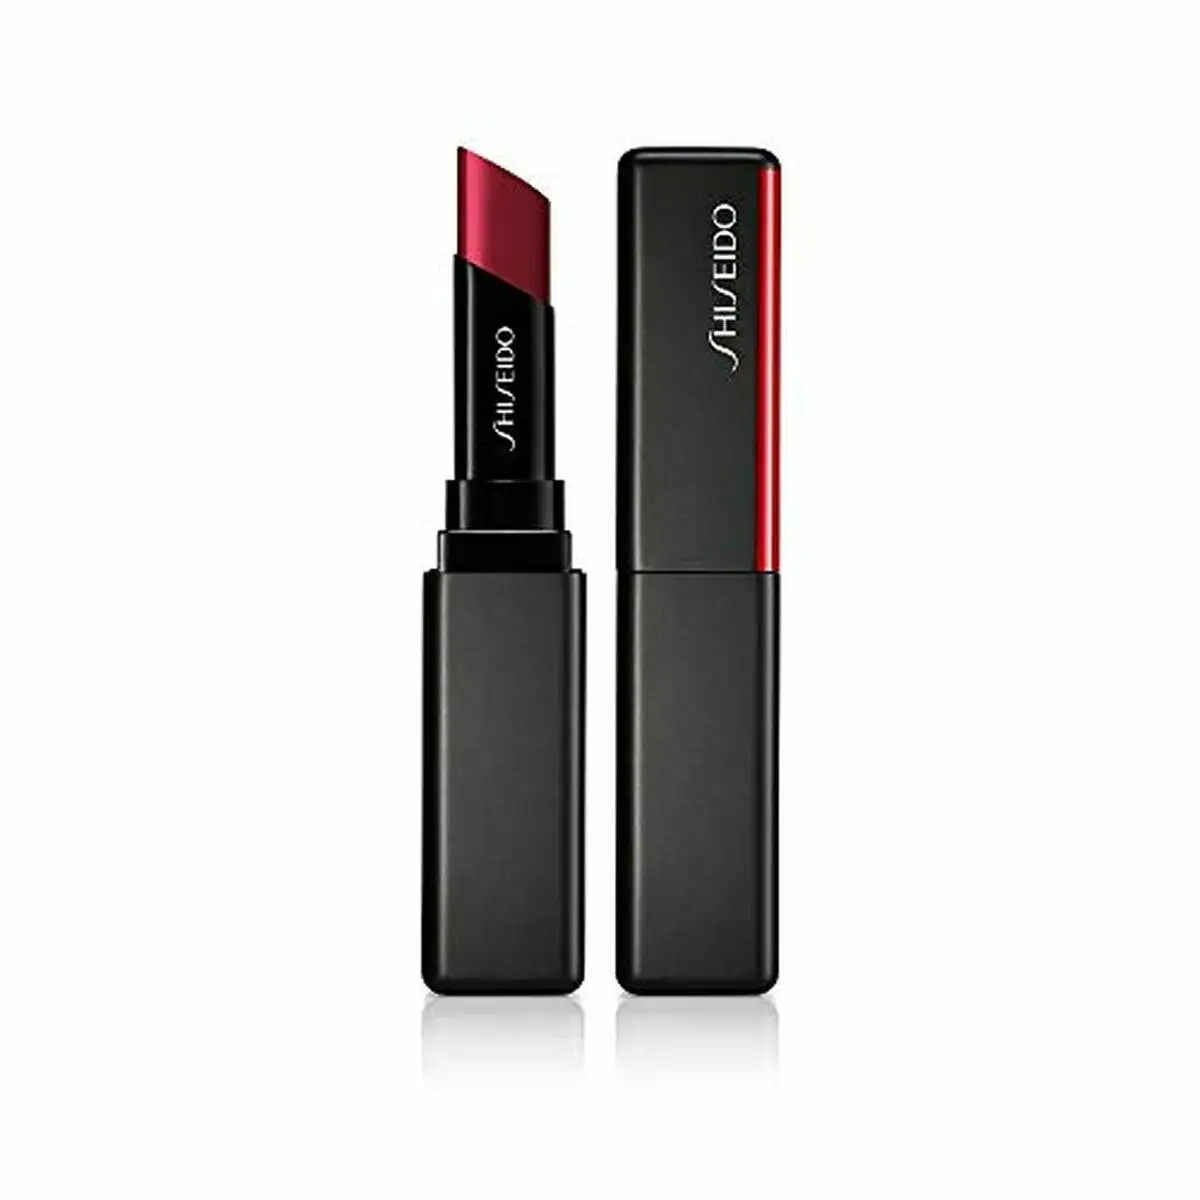 Rouge a le vres shiseido visionairy gel no 204 scarlet rush 1 6 g_9951. Bienvenue chez DIAYTAR SENEGAL - Où Chaque Détail Fait la Différence. Découvrez notre sélection méticuleuse et choisissez des articles qui répondent à vos exigences.